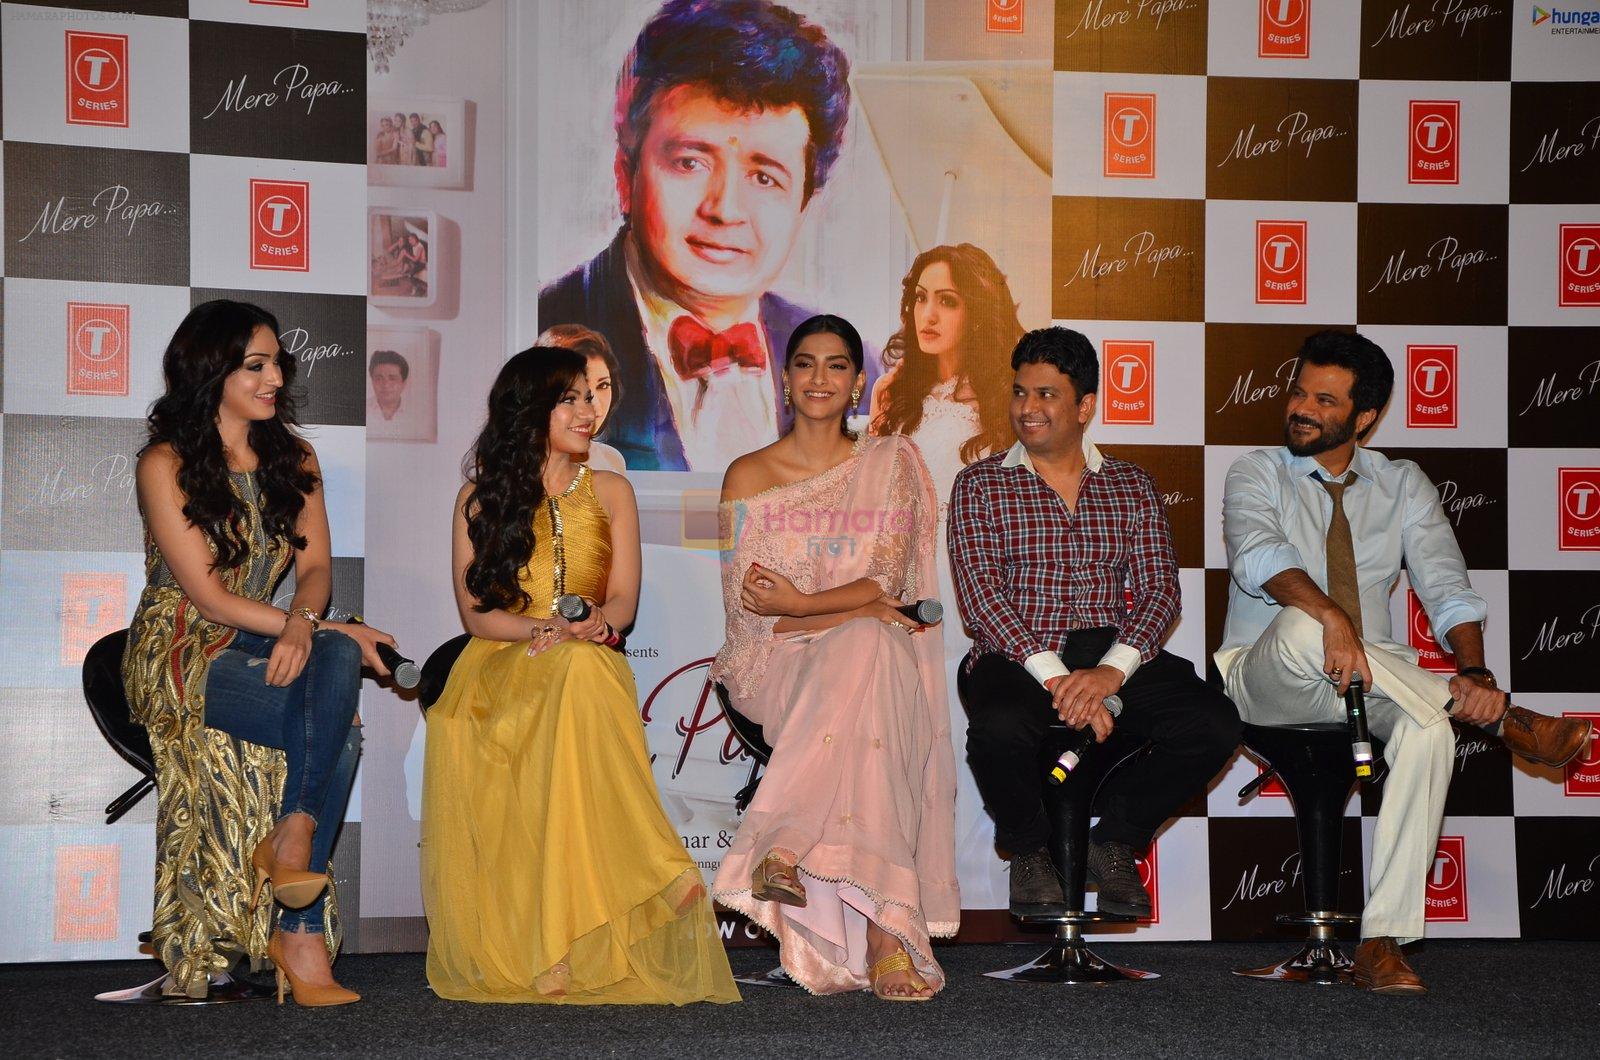 Sonam Kapoor, Anil Kapoor, Bhushan Kumar, Tulsi Kumar at Tulsi Kumar album launch on 1st April 2016